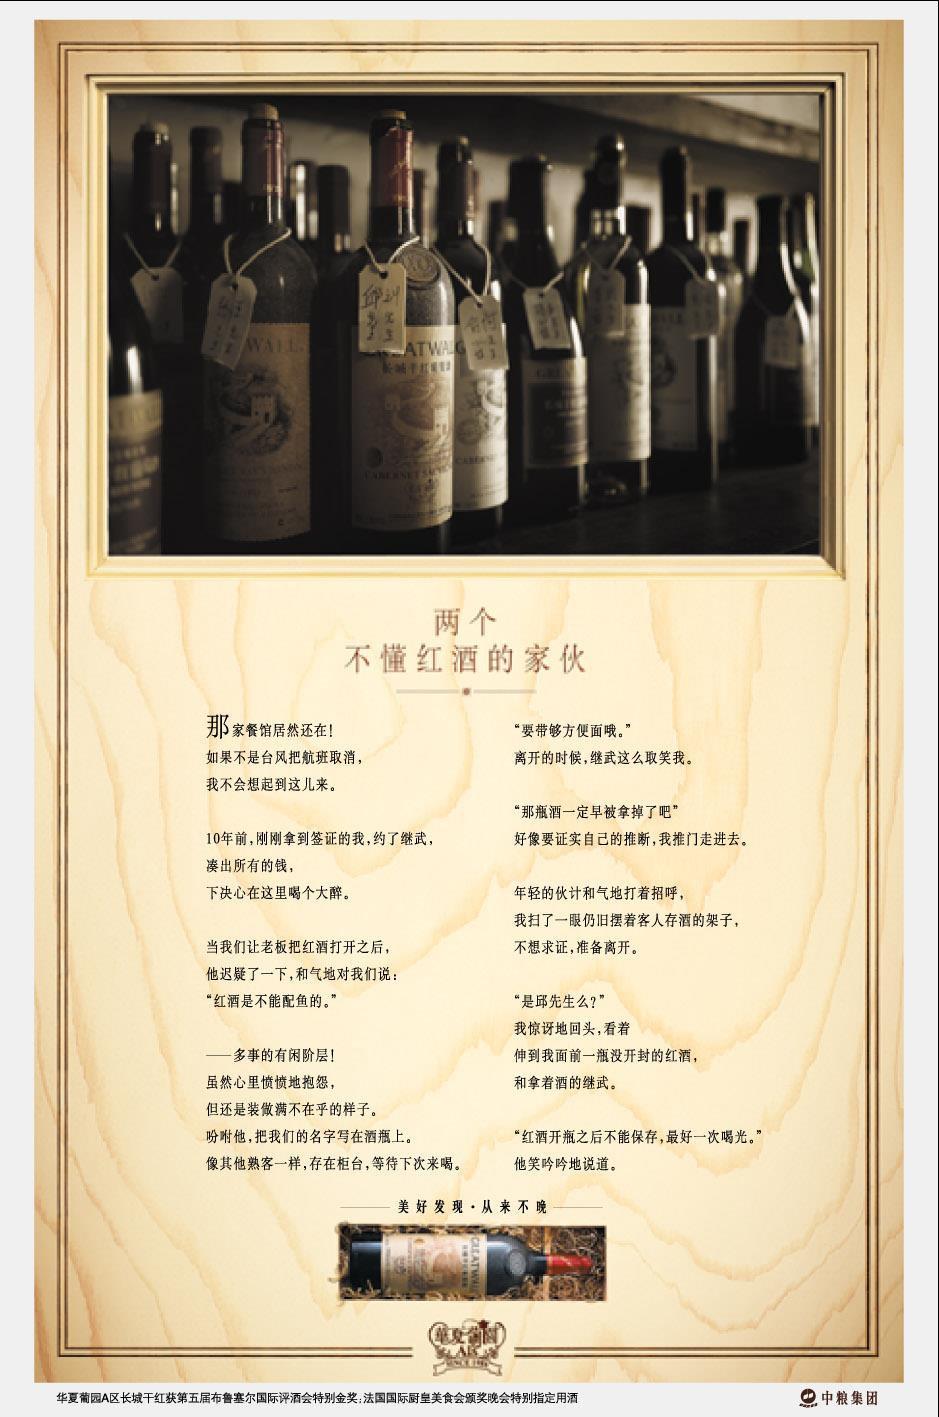 长城葡萄酒系列经典长文案:自然成就葡萄酒的天资 年岁其滋味